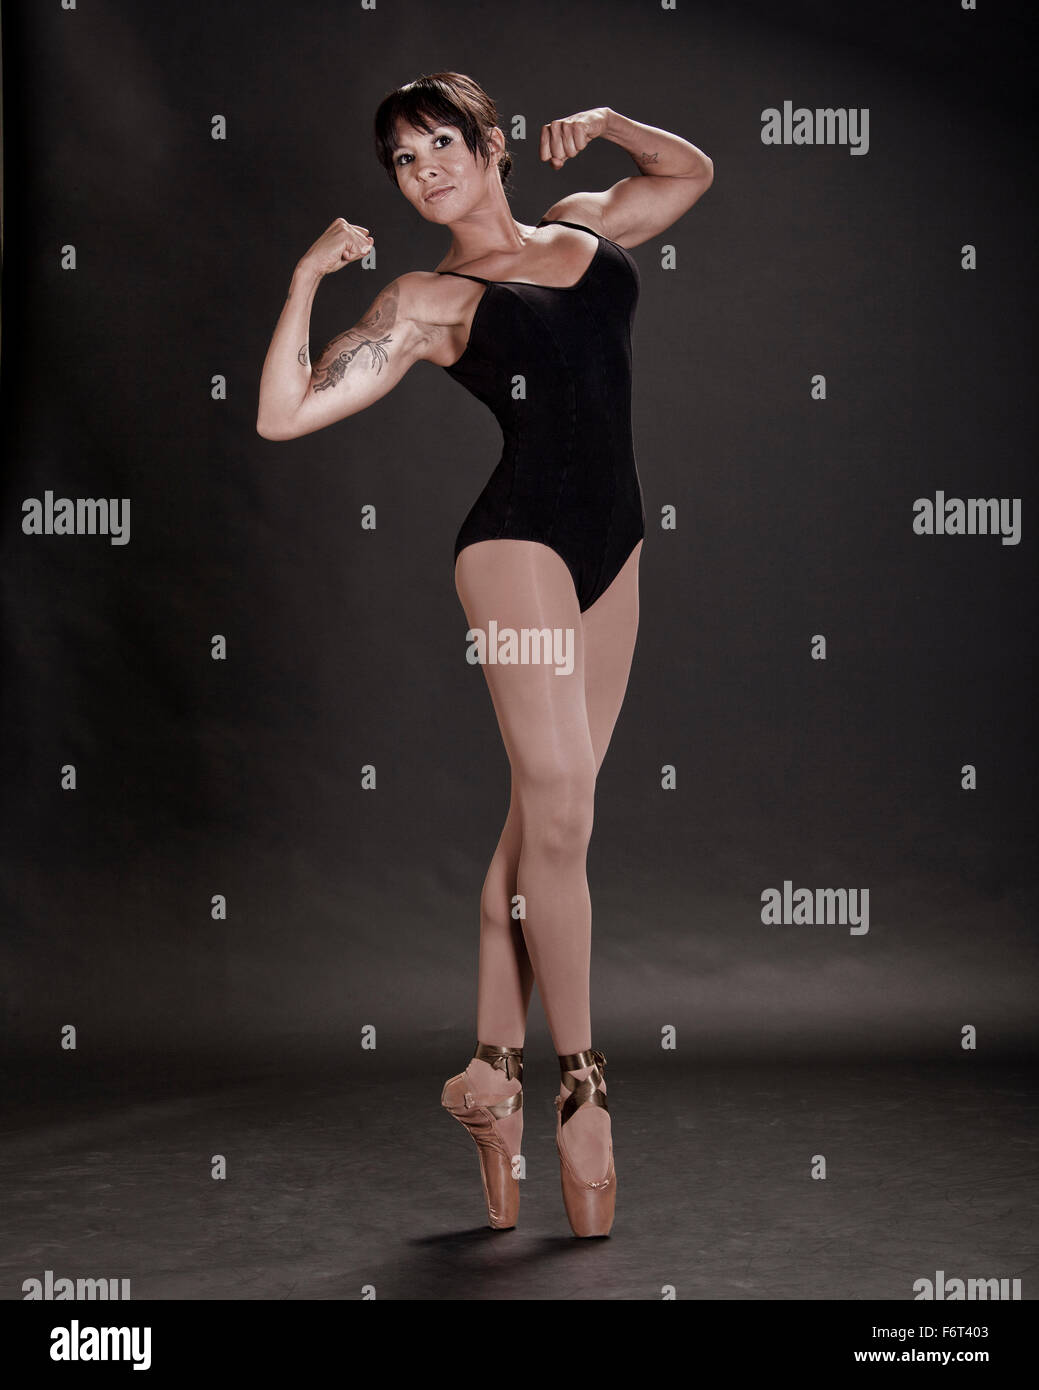 Ballerine hispanique flexing muscles Banque D'Images